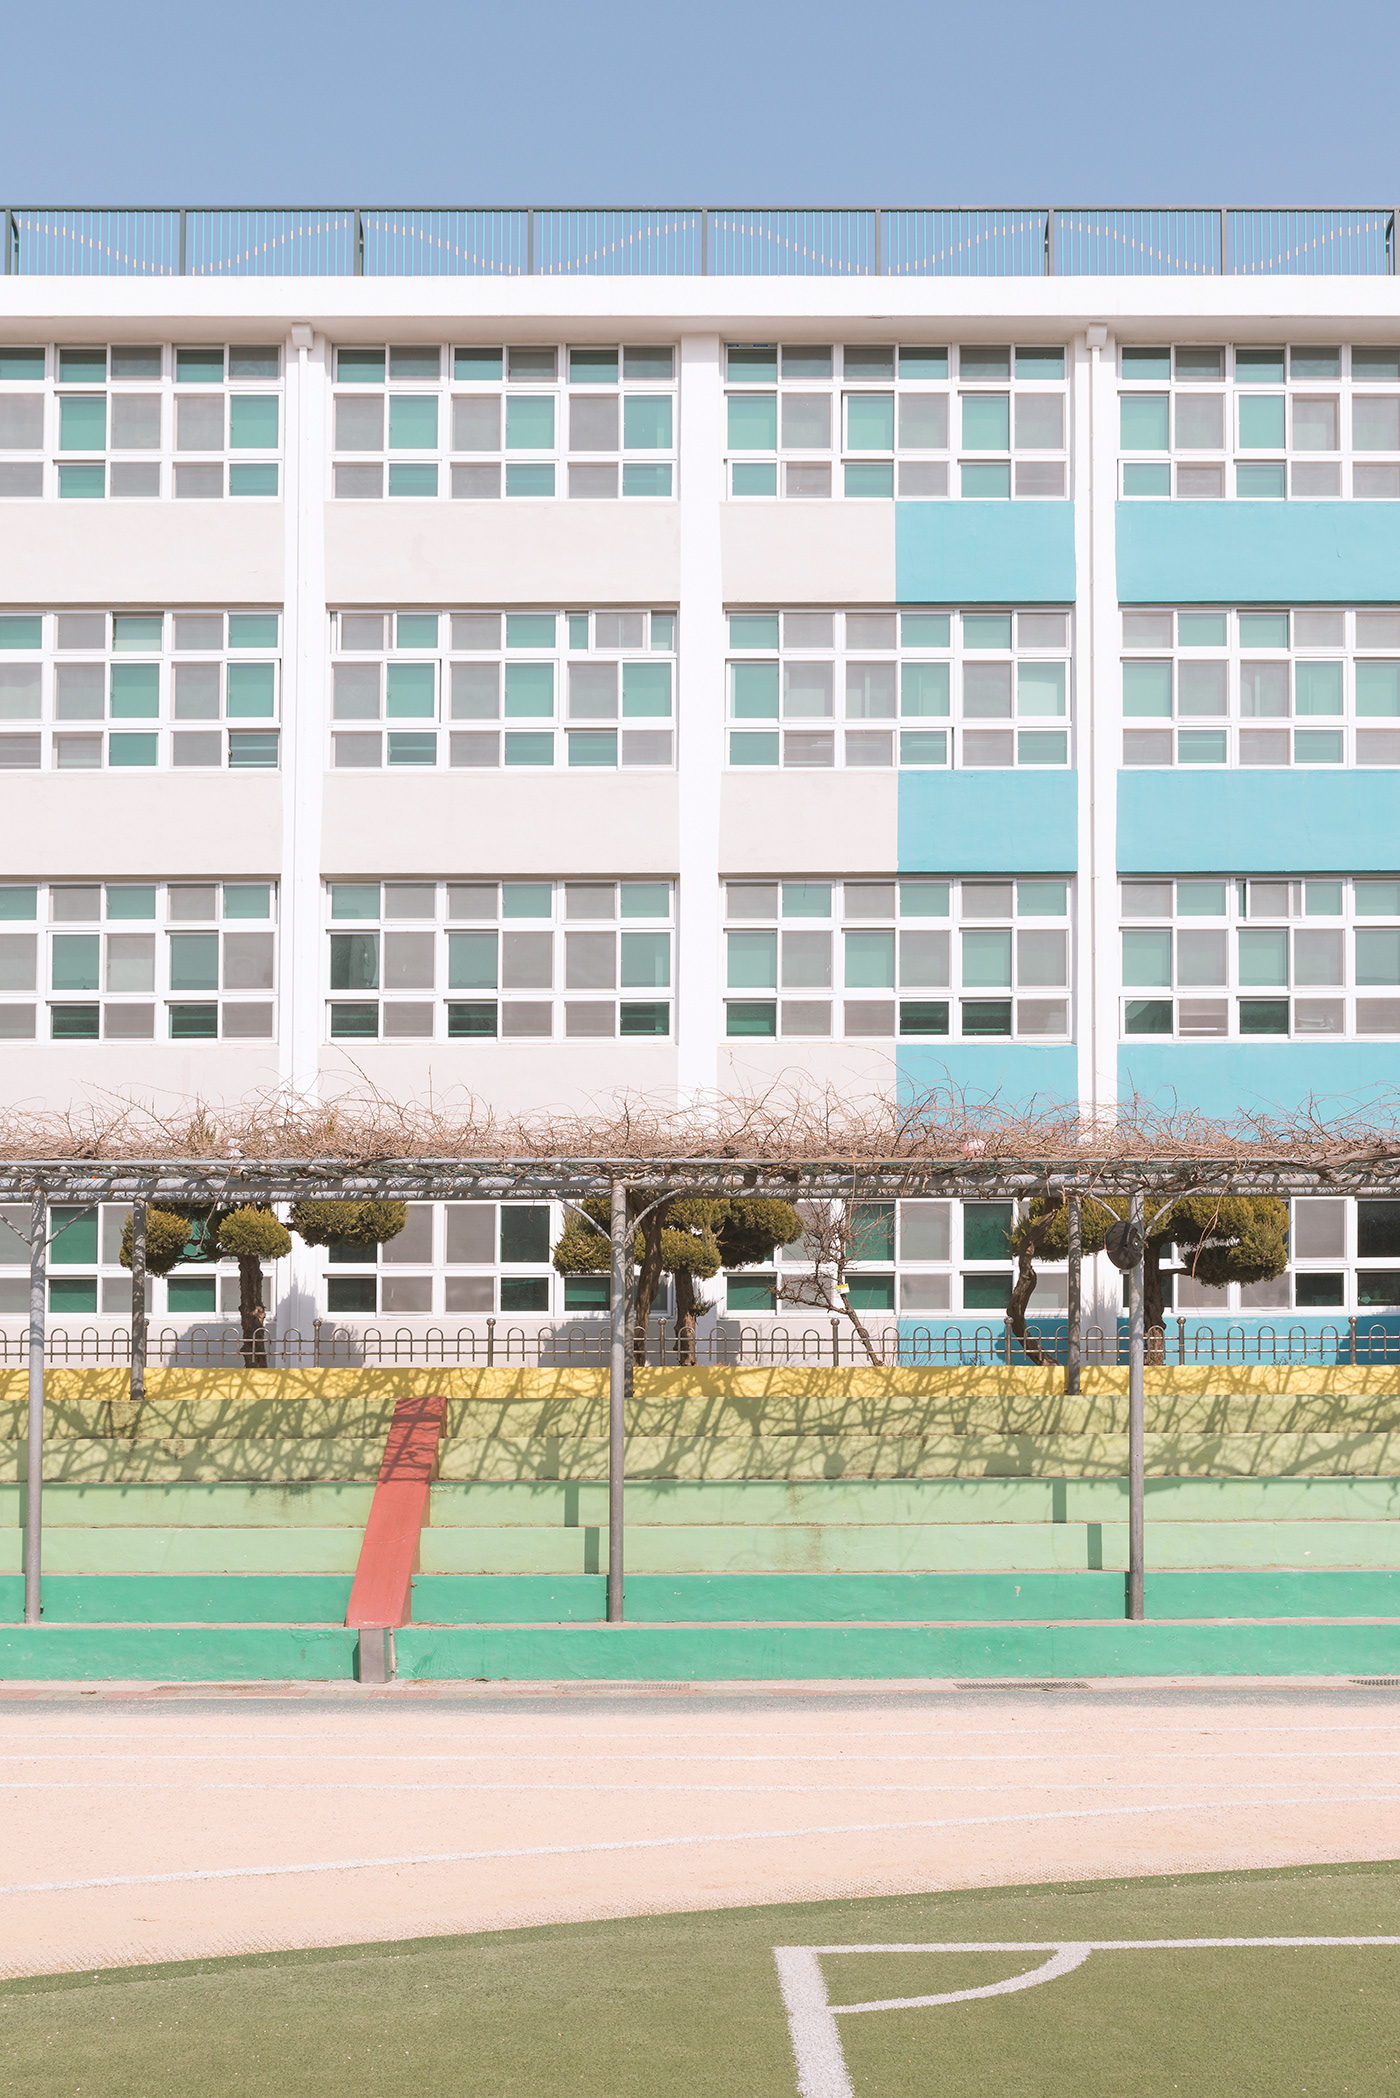 Adobe Portfolio Korea seoul Busan Schools playgrounds asia pastel football trees fine art